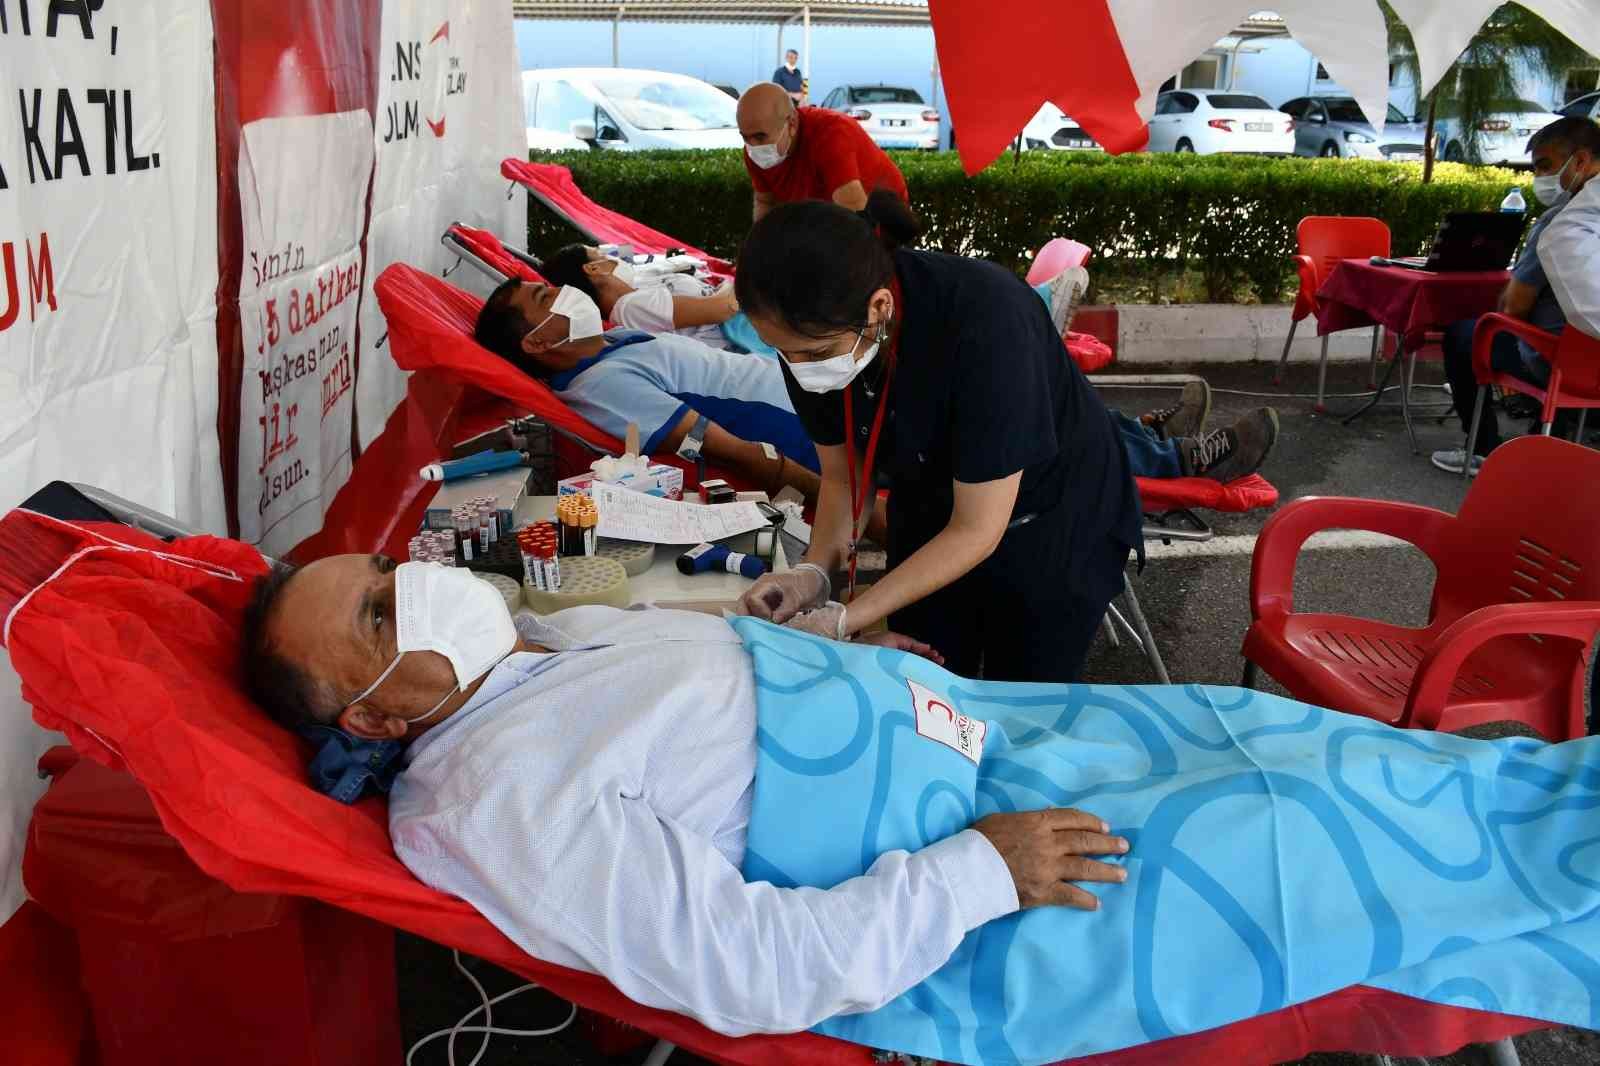 MESKİ personelinden kan bağışı desteği #mersin